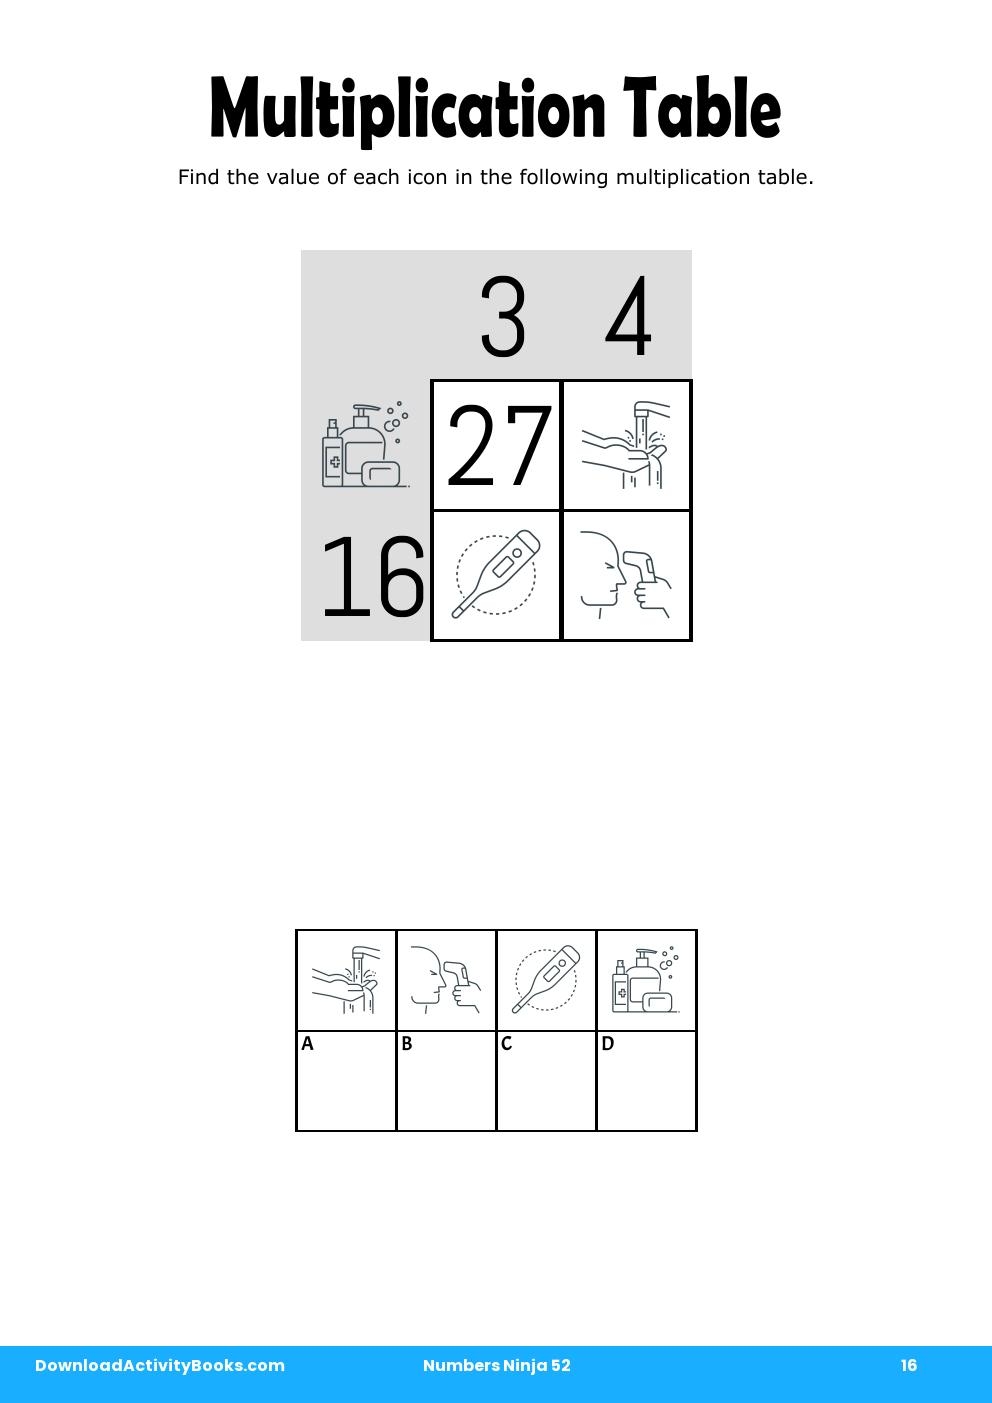 Multiplication Table in Numbers Ninja 52